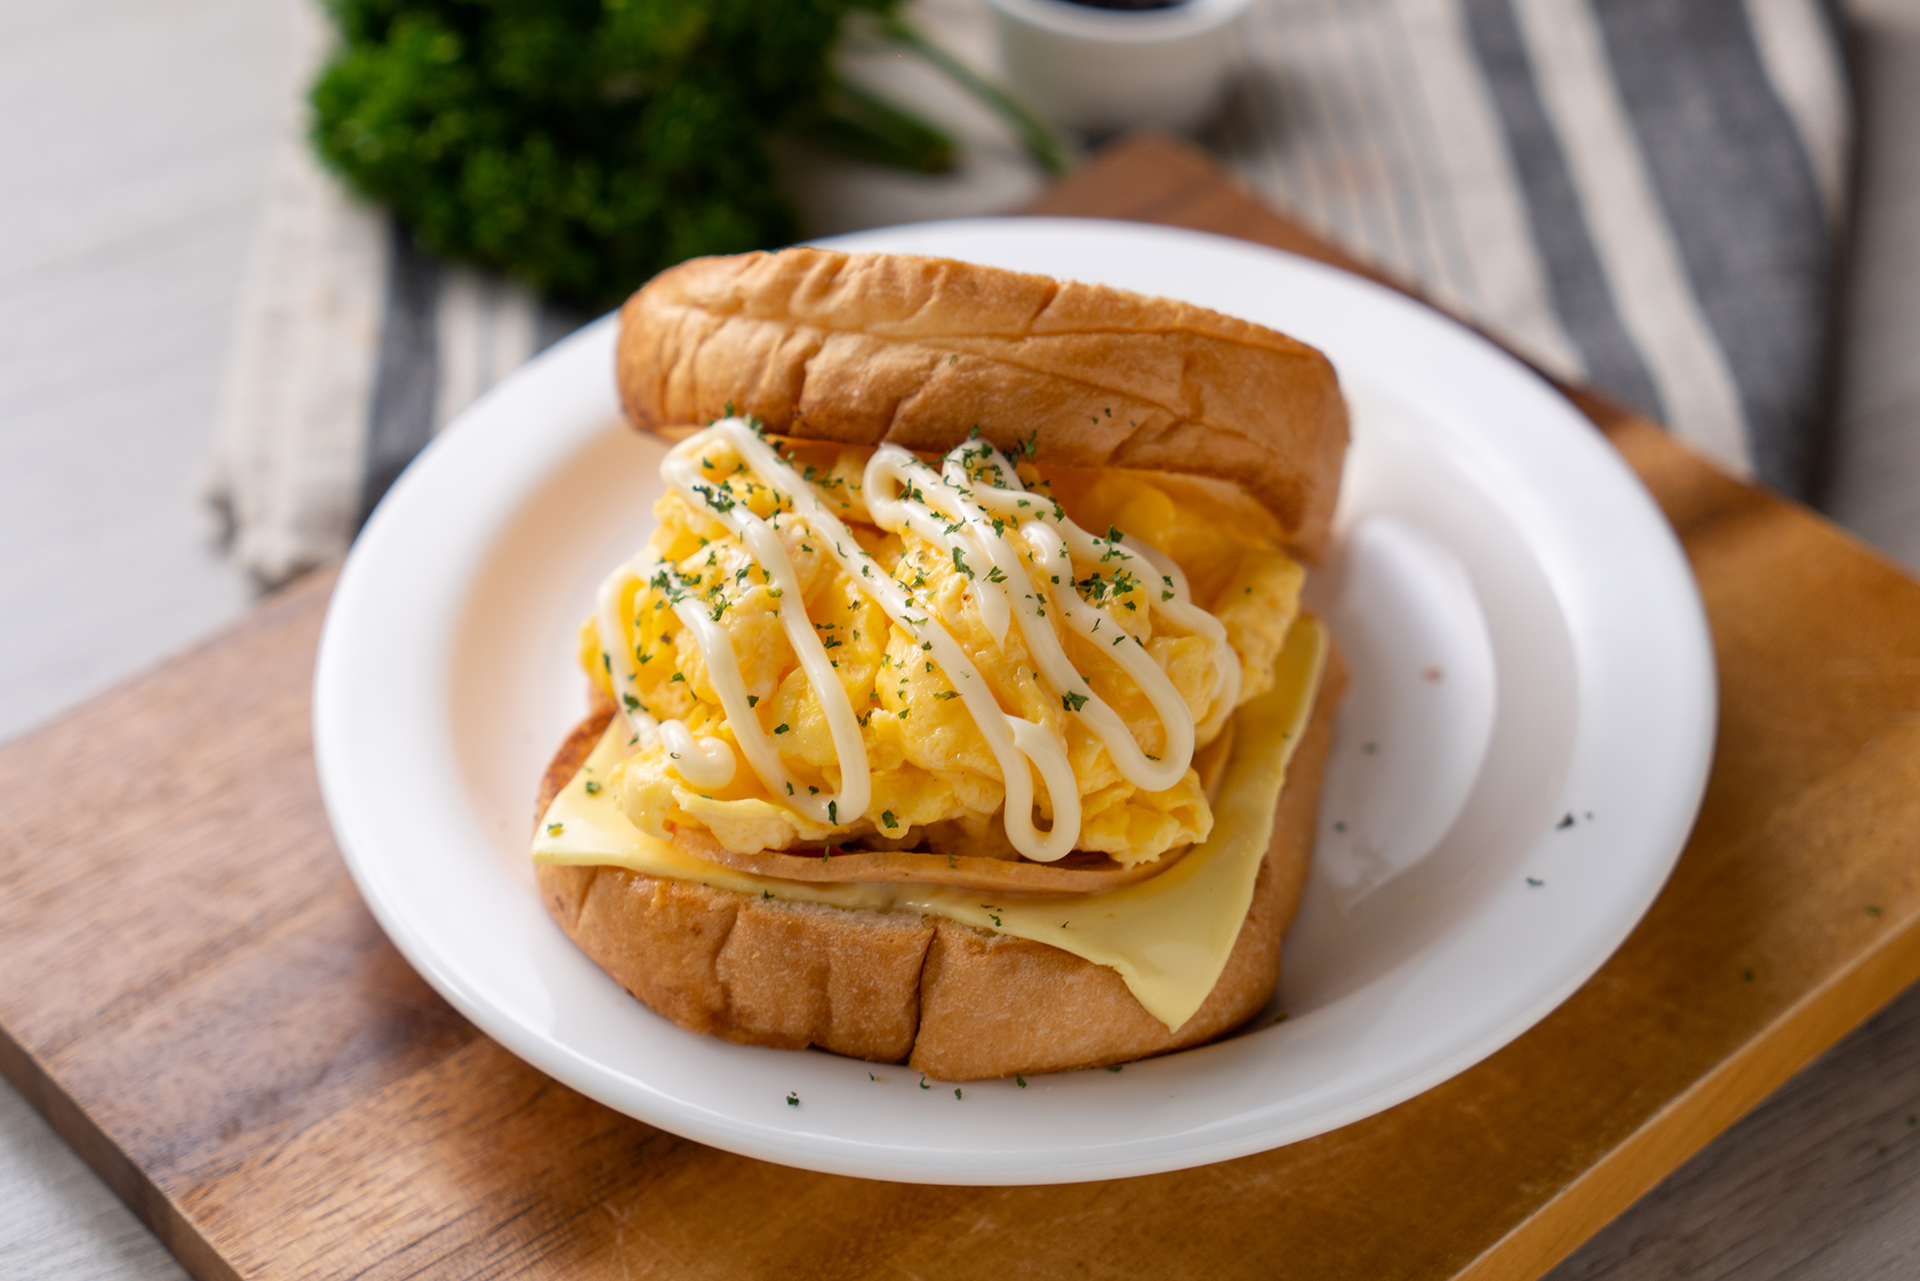 แซนวิชขนมปังไข่ขาวสไตล์เกาหลี - CP Brandsite เติมชีวิตที่ดี